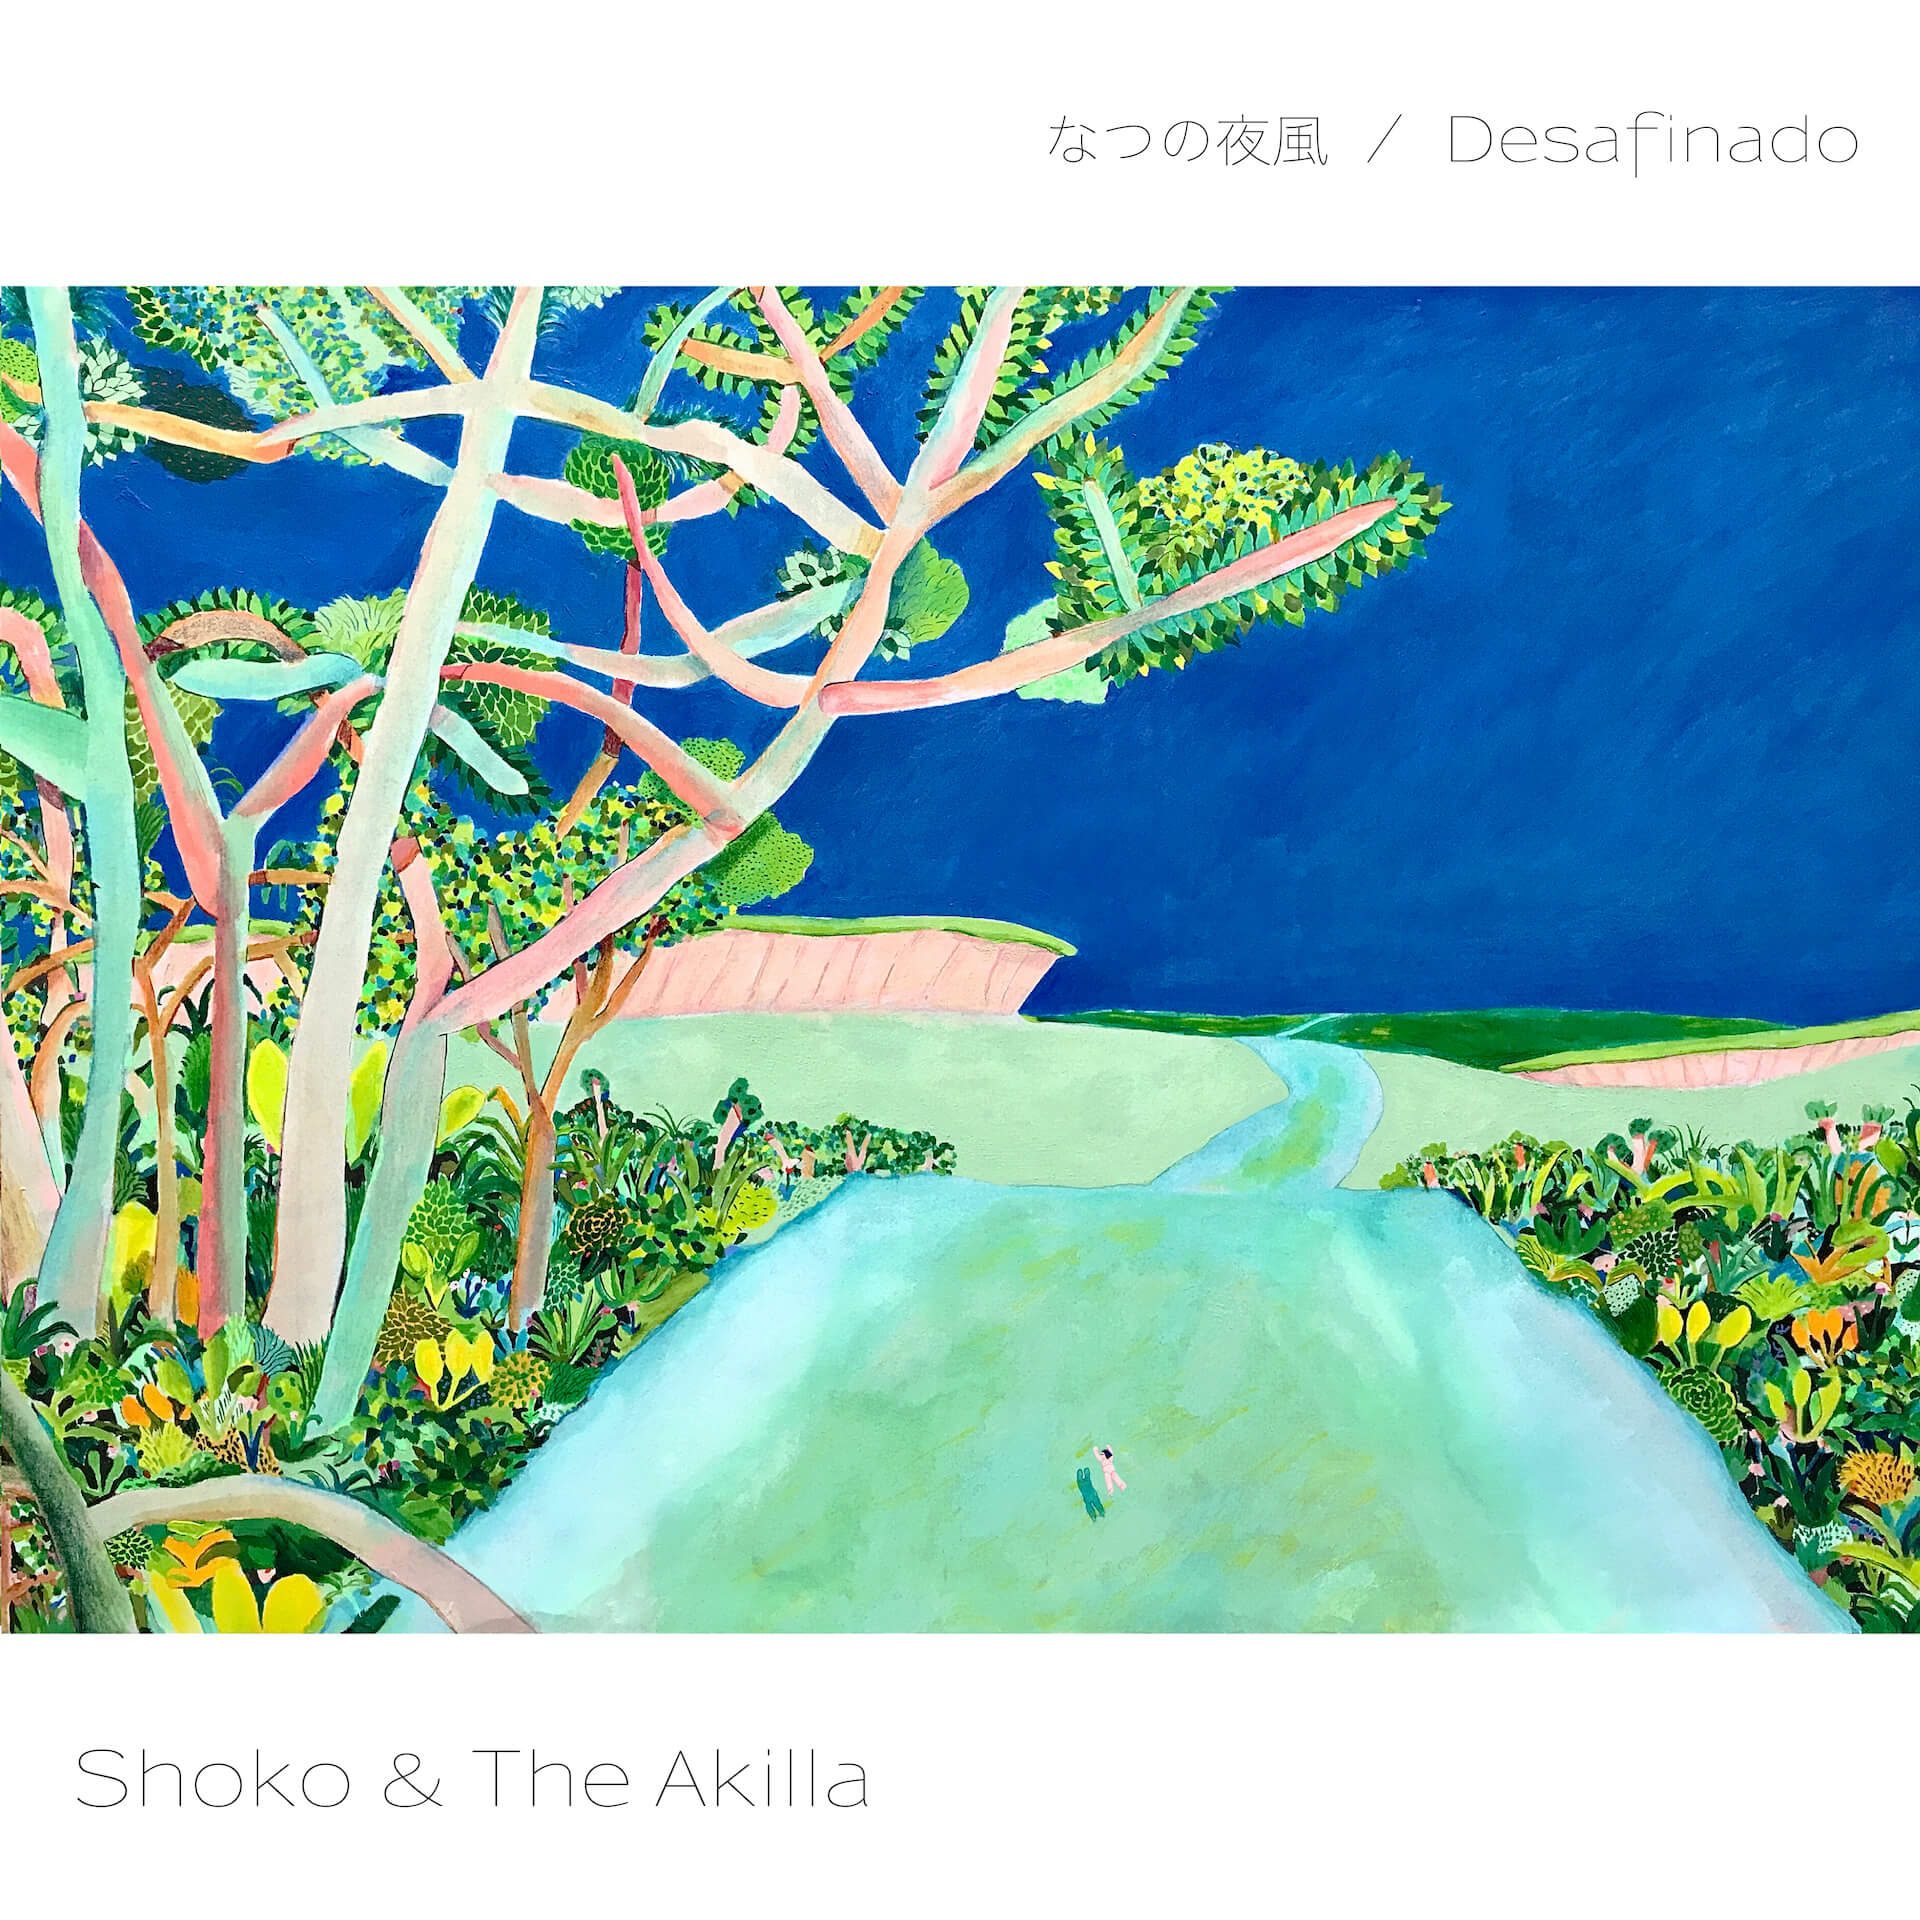 Shoko & The Akillaが新曲「なつの夜風」をリリース｜ボサノヴァの名曲「Desafinado」のカバーも同時配信｜7インチレコードの予約もスタート！ music220831-shokoandakilla1